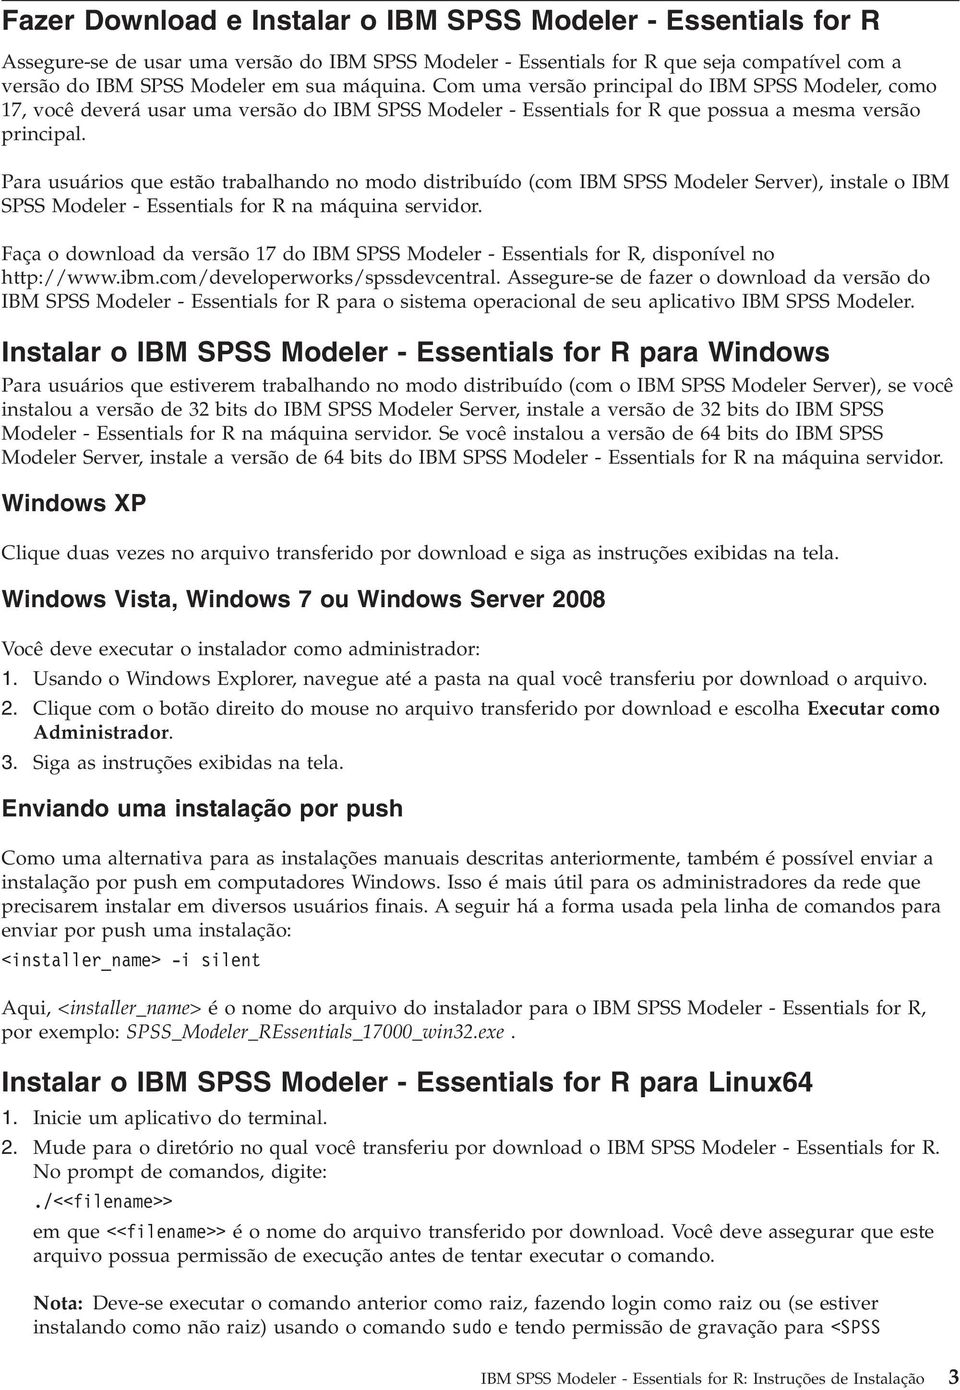 Para usuários que estão trabalhando no modo distribuído (com IBM SPSS Modeler Server), instale o IBM SPSS Modeler - Essentials for R na máquina servidor.